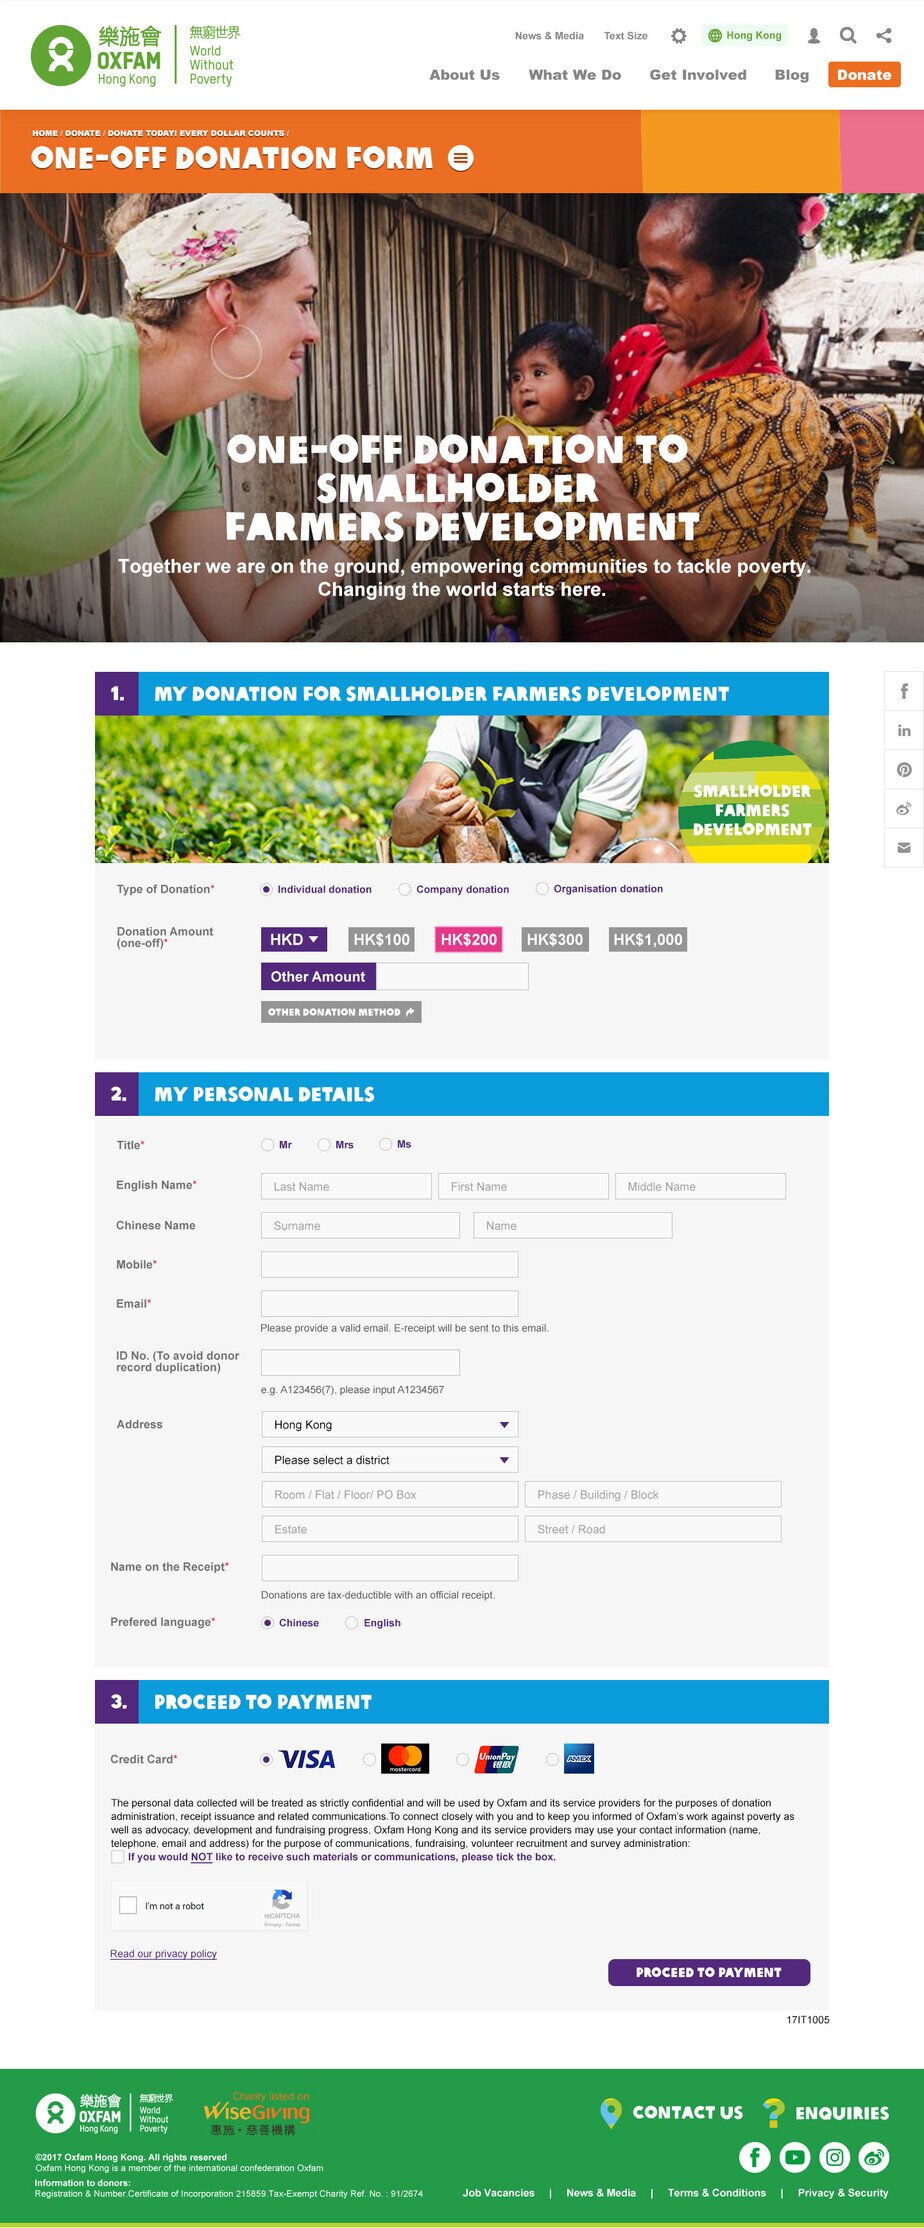 Oxfam Hong Kong website screenshot for desktop version 6 of 7